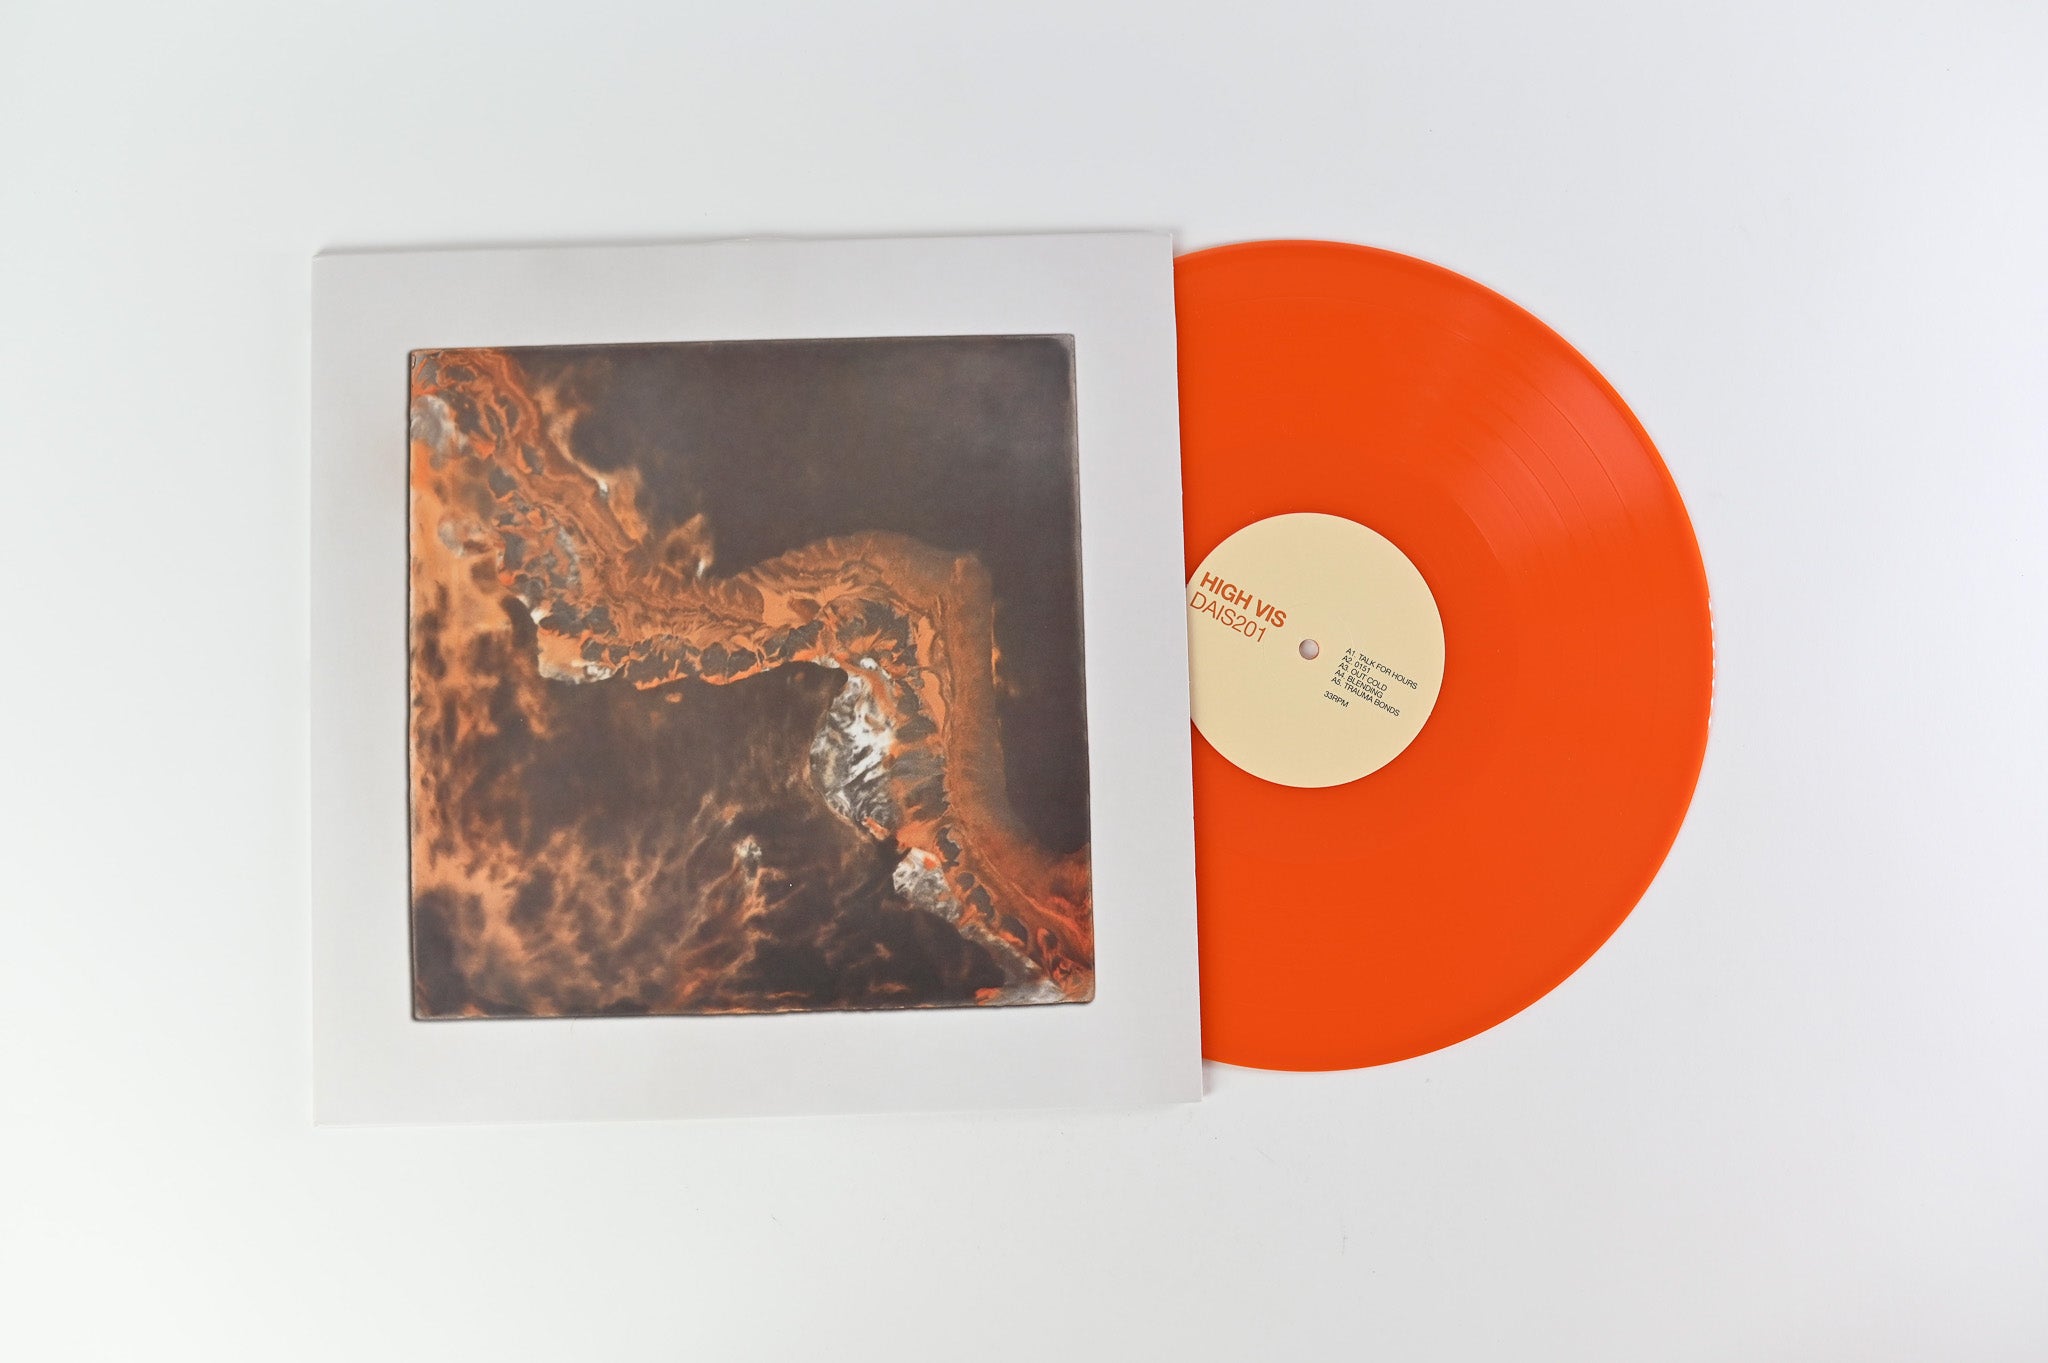 High Vis - Blending on Dais Records - Orange Vinyl